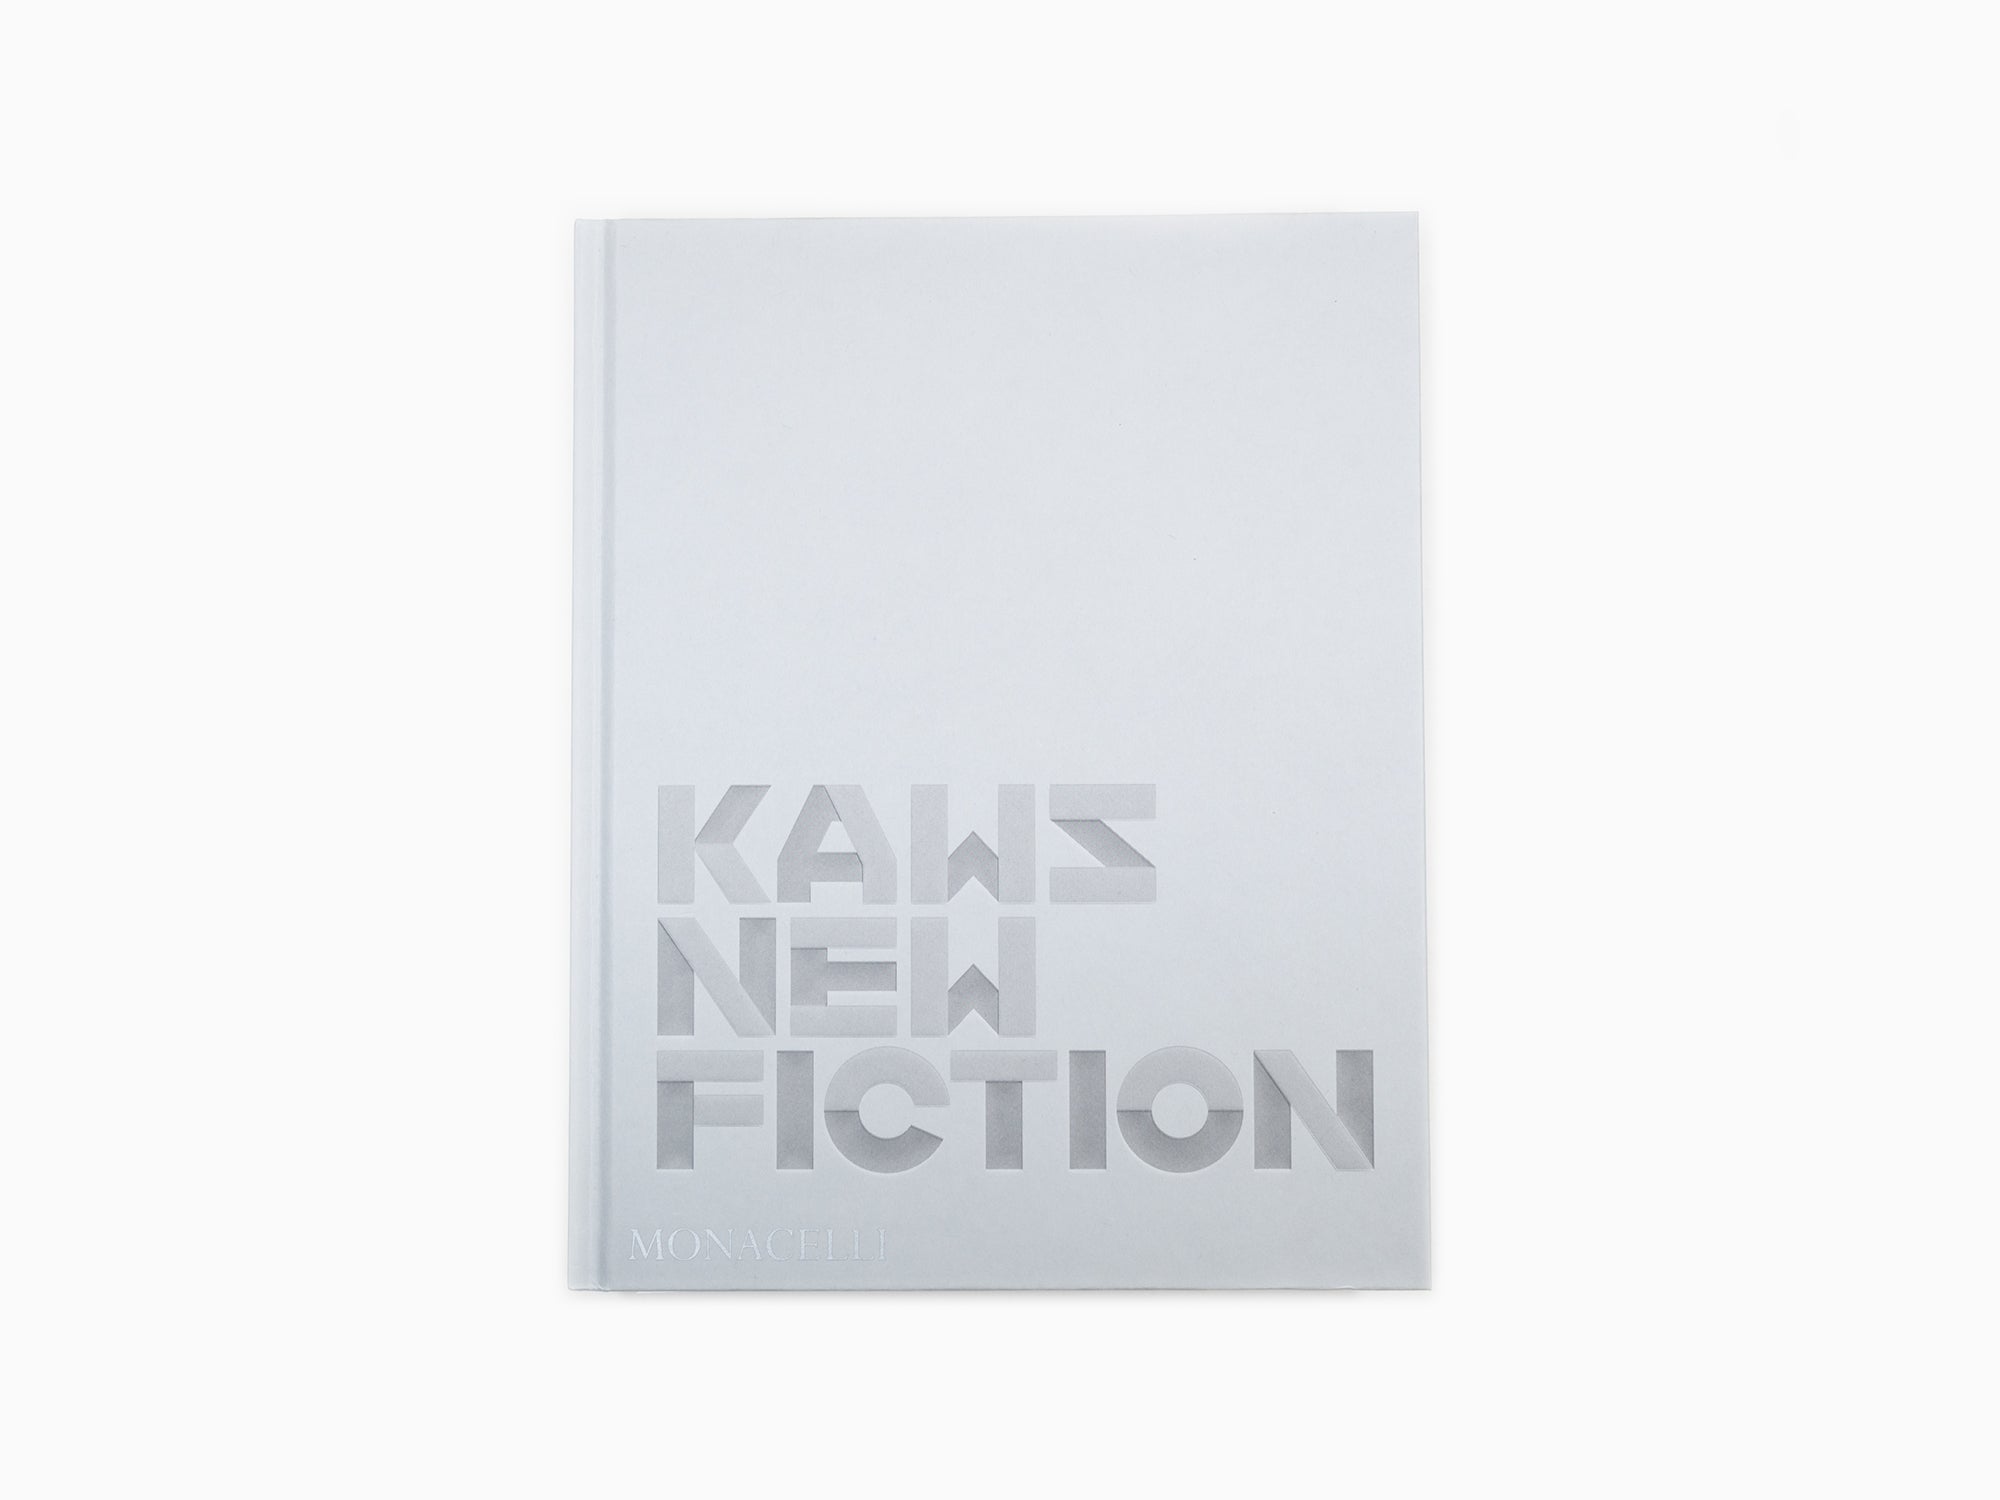 KAWS - Nouvelle fiction